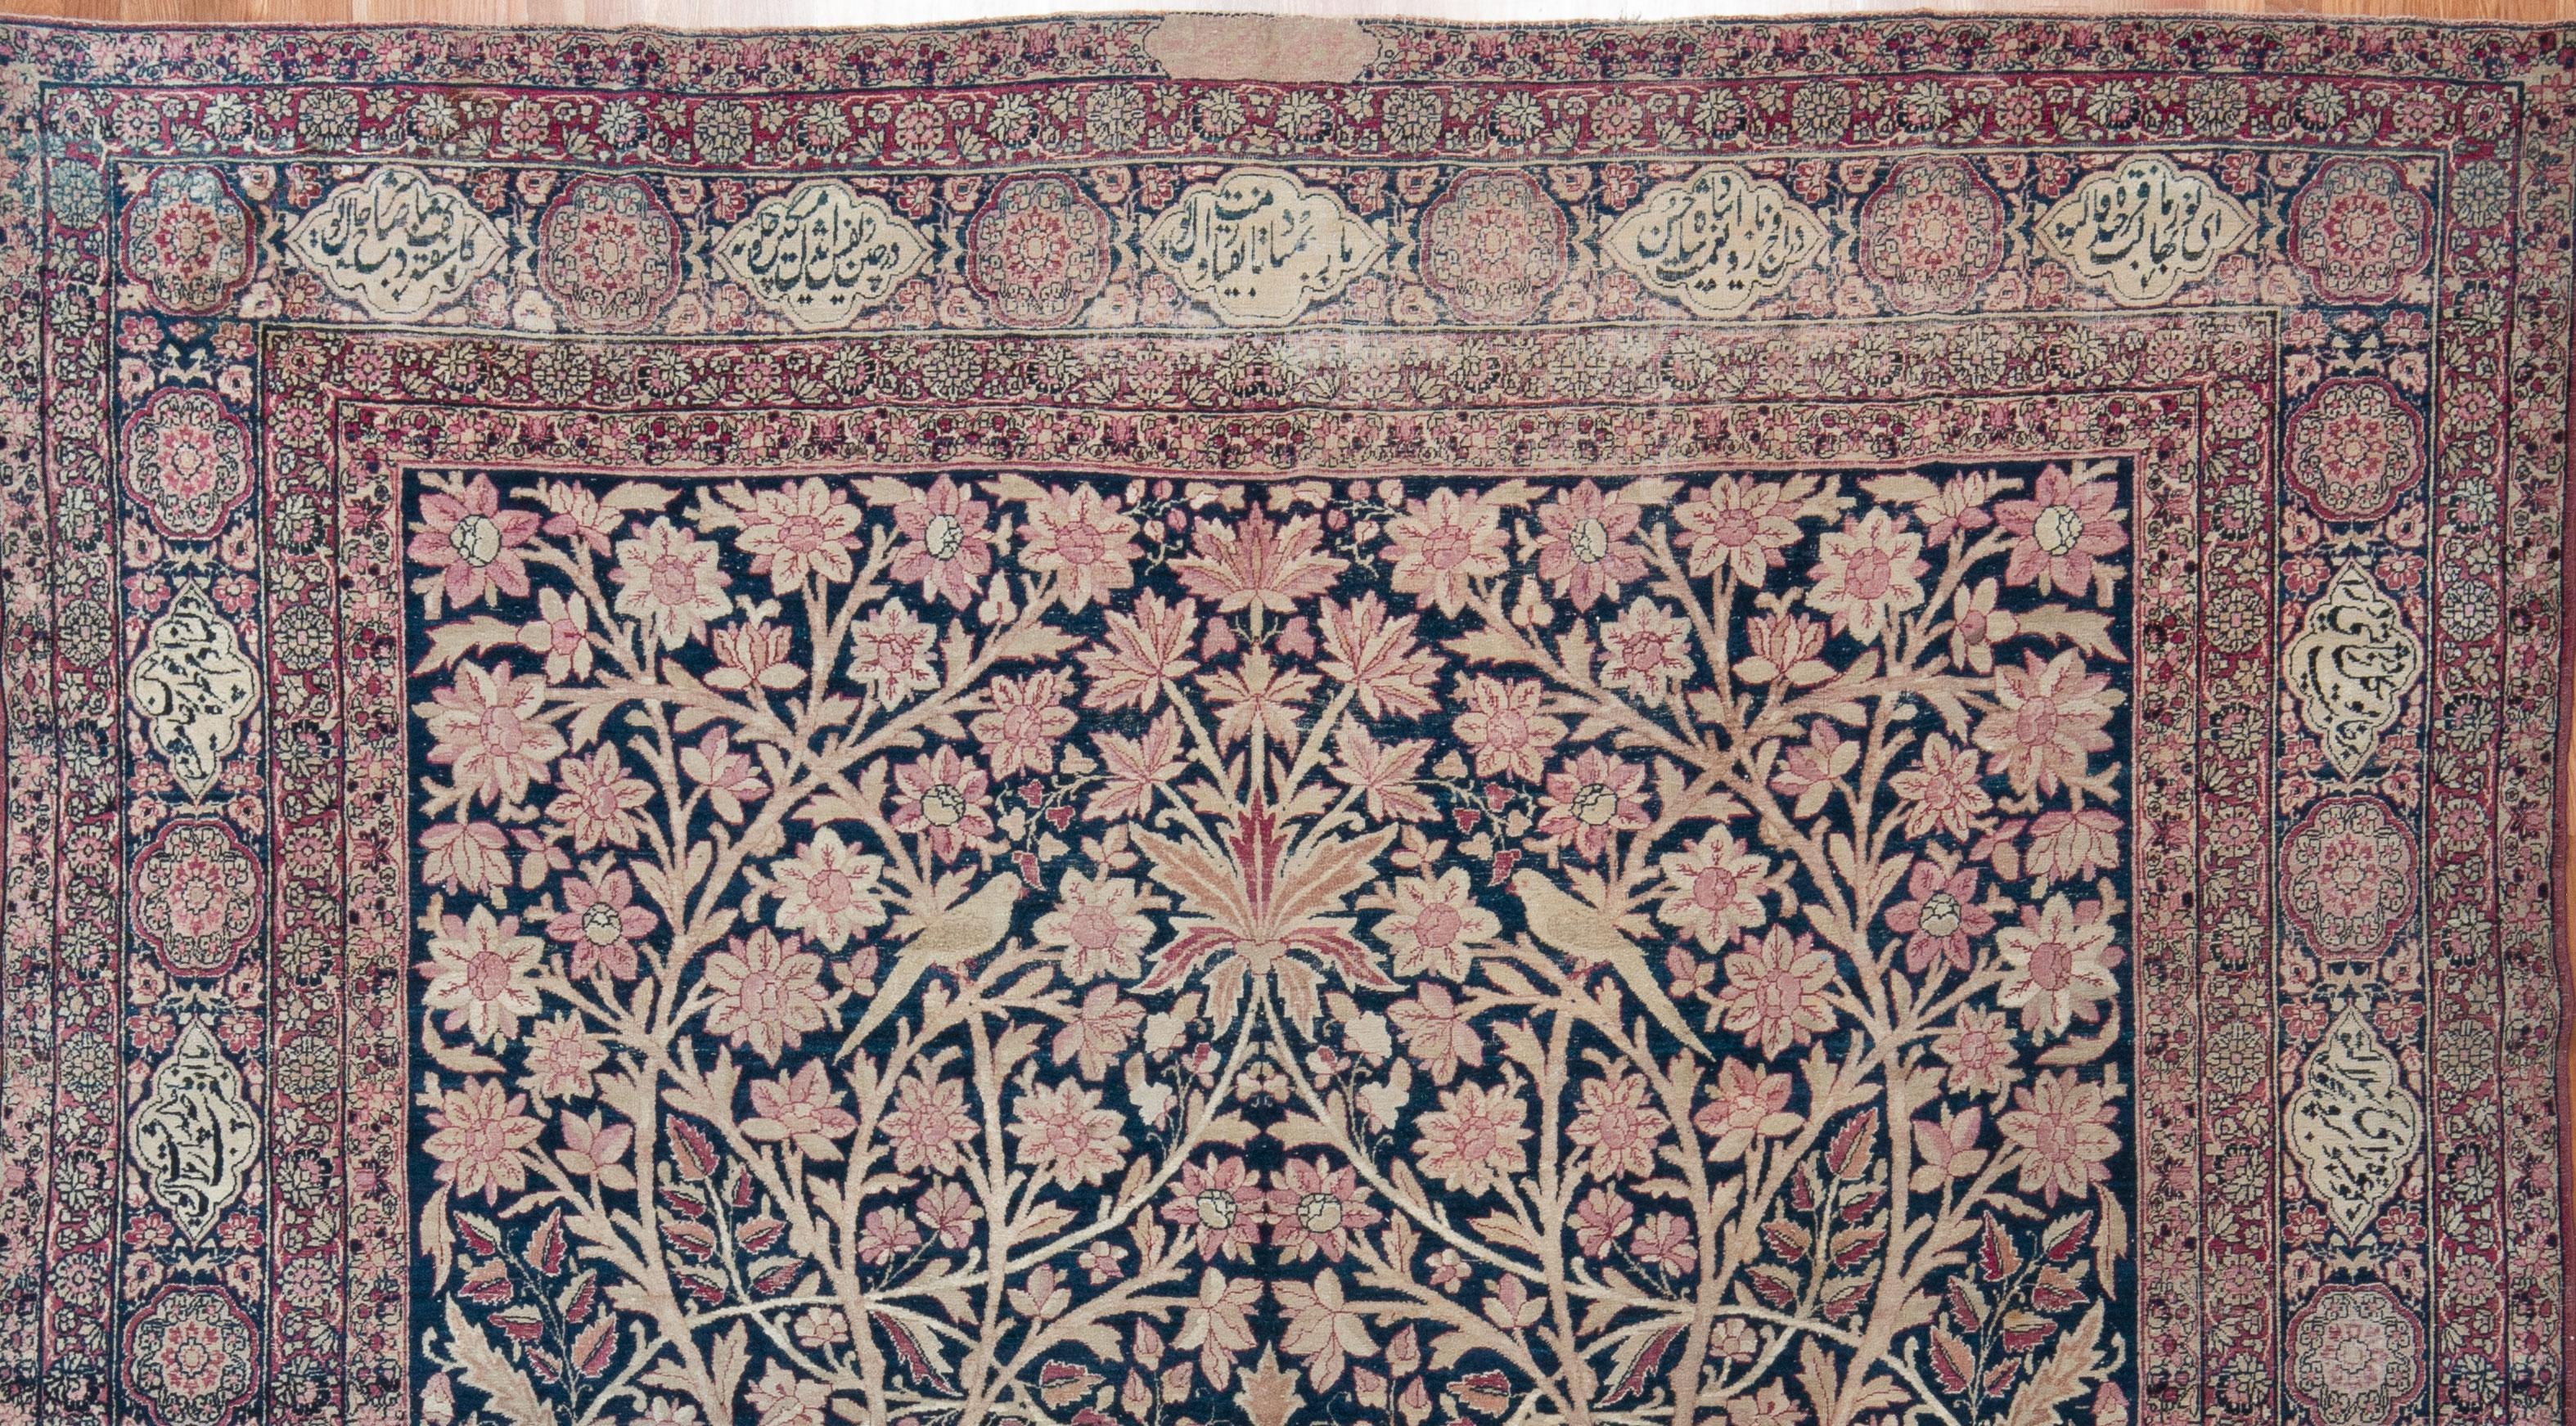 Dieser aufwendig gewebte Teppich aus dem späten 19. Jahrhundert zeigt ein wunderschönes botanisches Muster aus Ranken, Blumen und Vögeln in Mauve, Zartrosa und Elfenbein auf einem tiefblauen Feld. Ein sehr niedriger Wollflor. Natürlich gefärbt. Ein